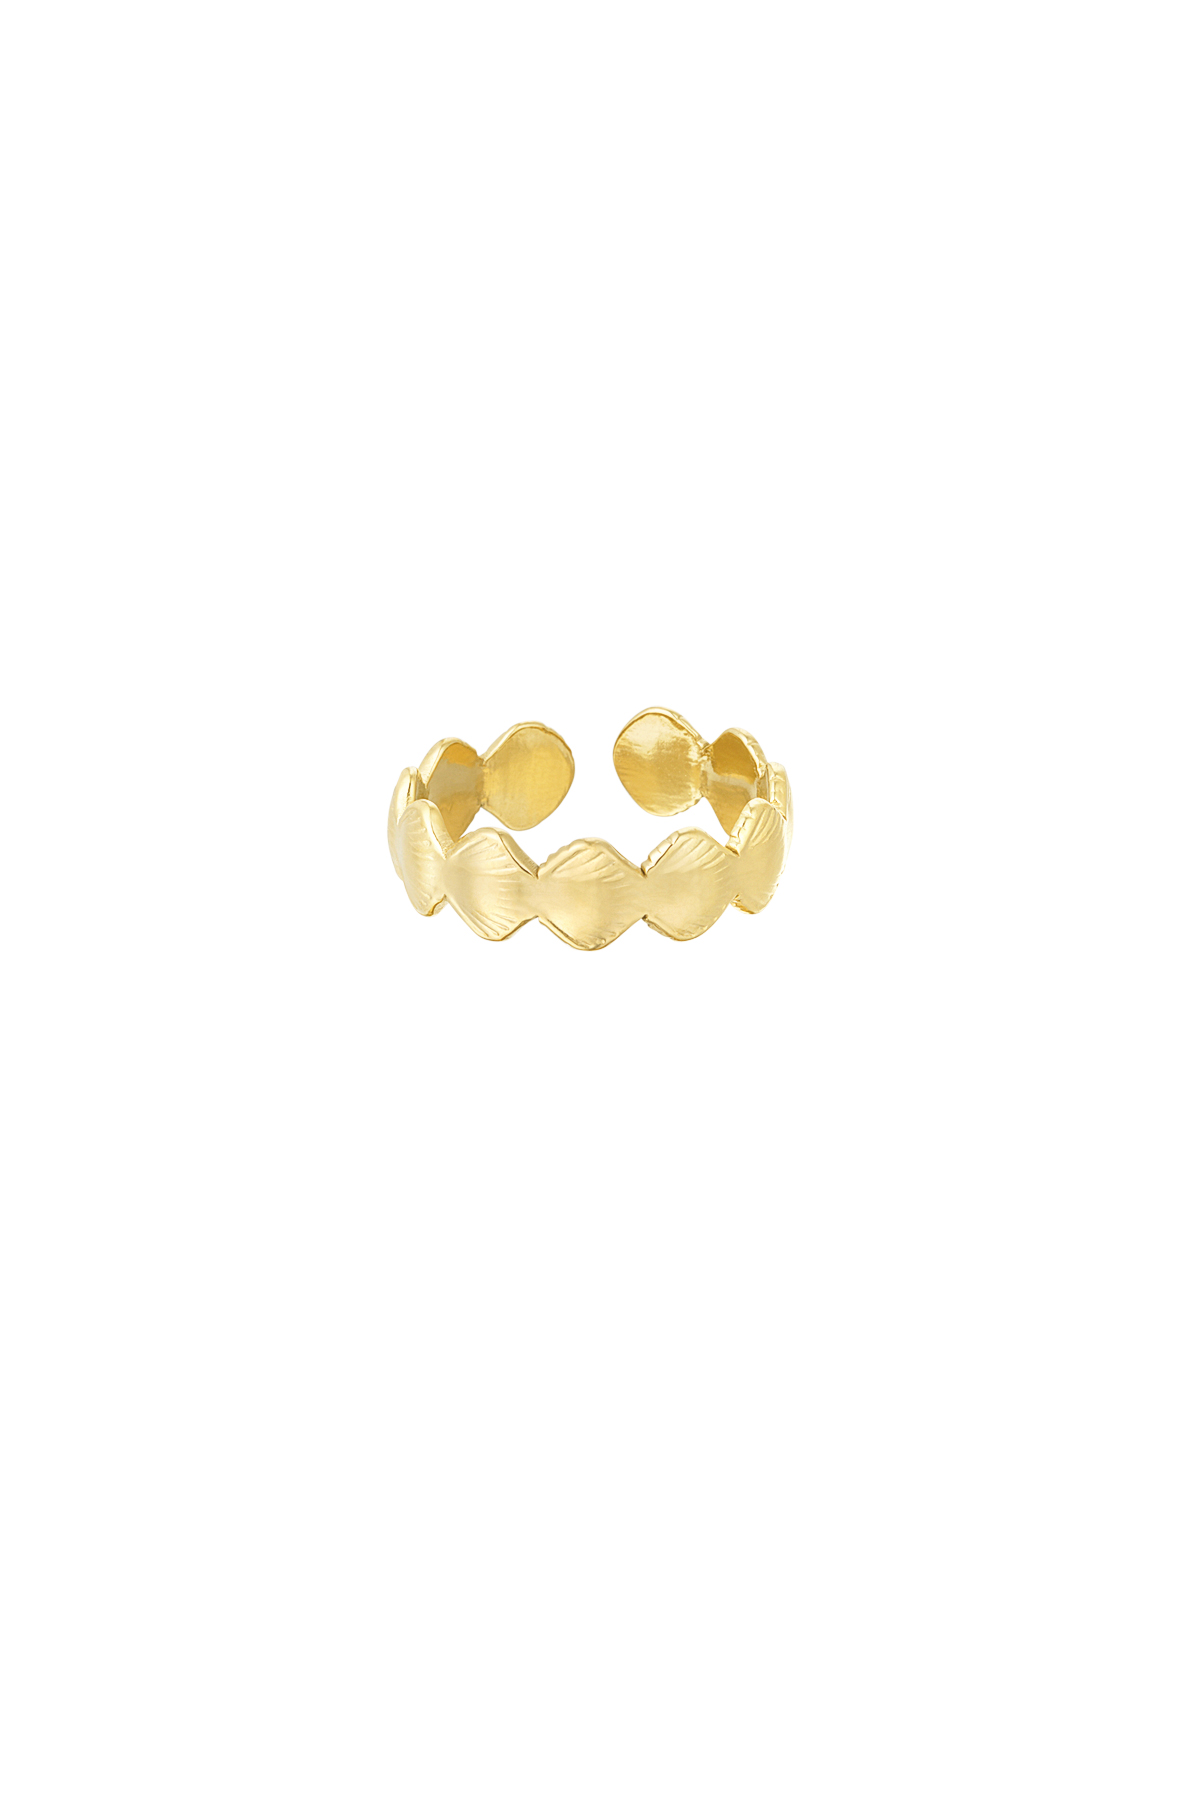 Ring shell soul - goud h5 